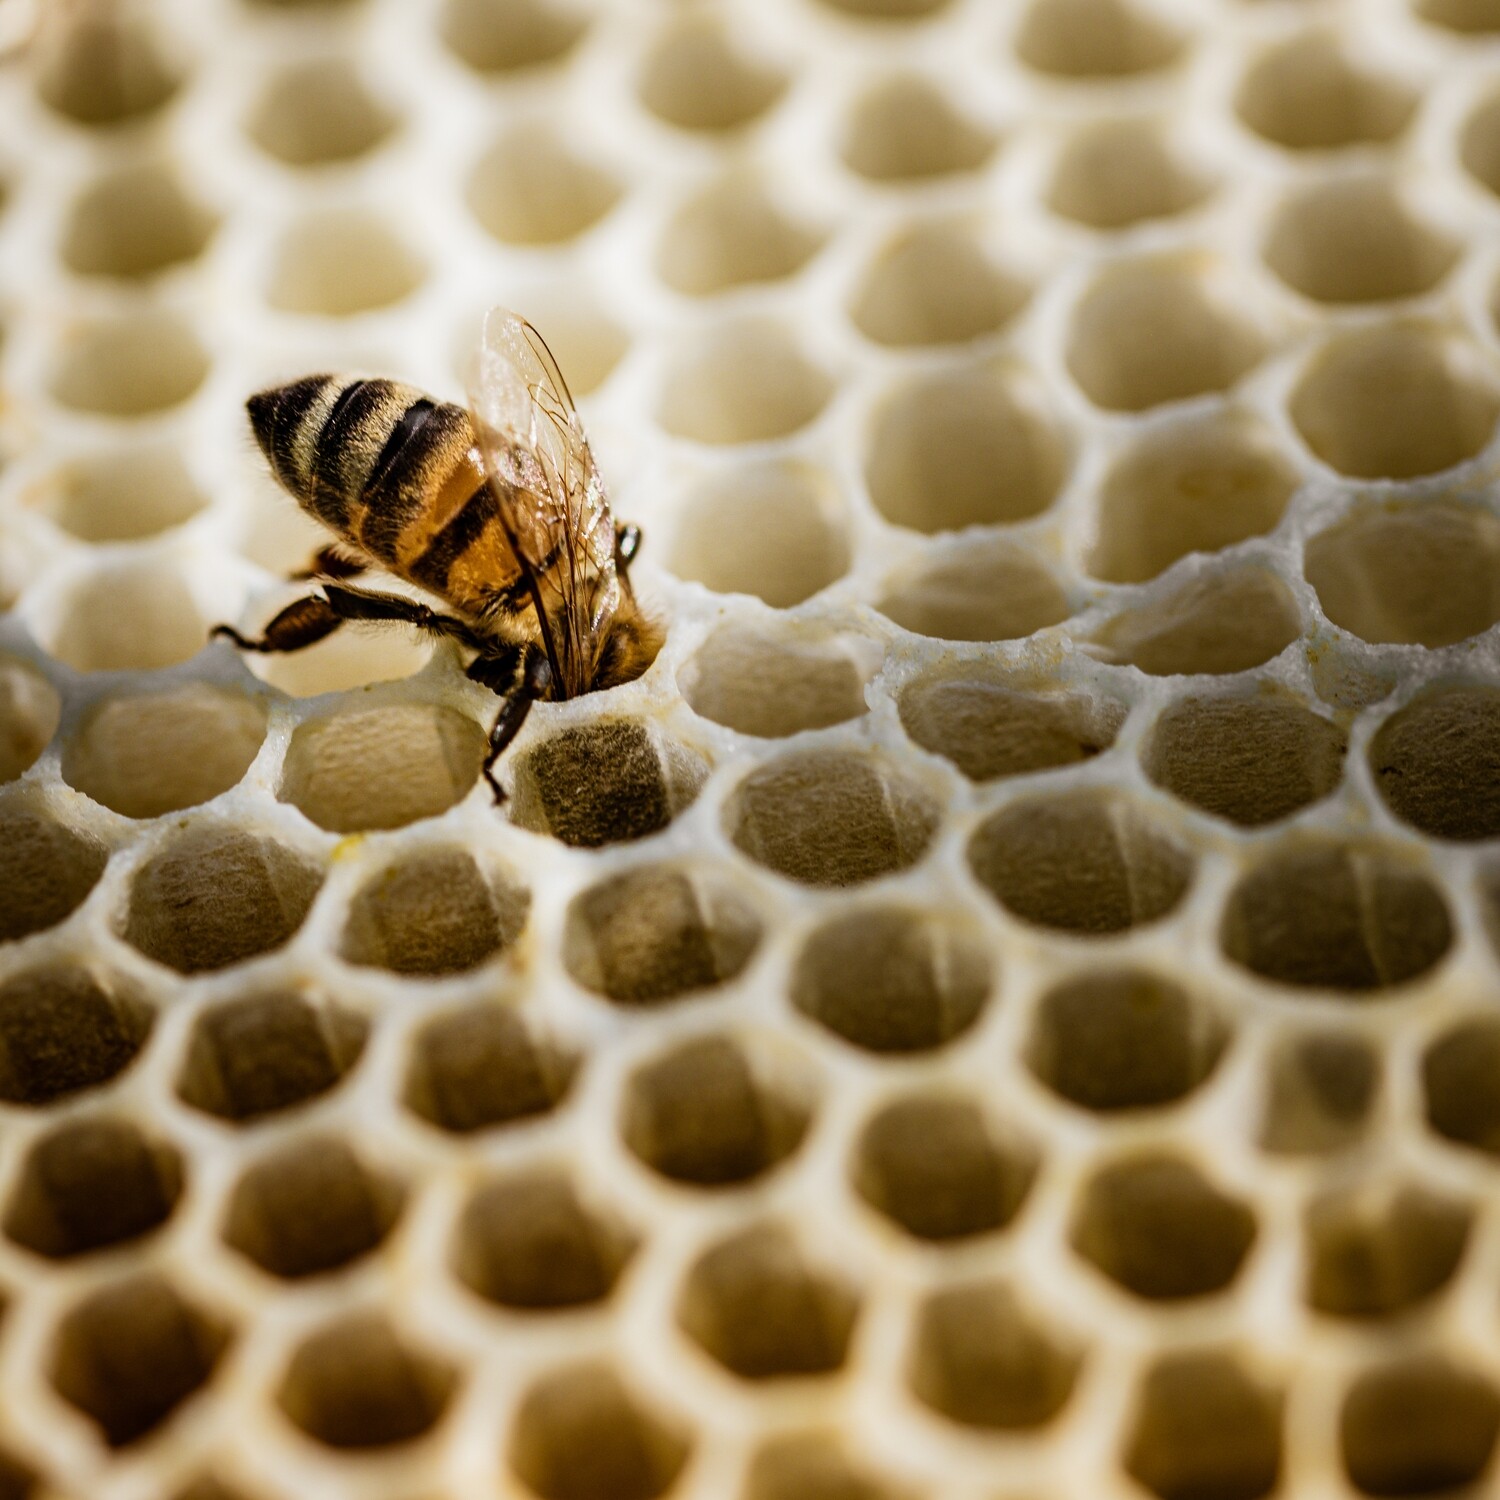 Wabe mit Biene - Druck auf Leinwand 
60x60 cm